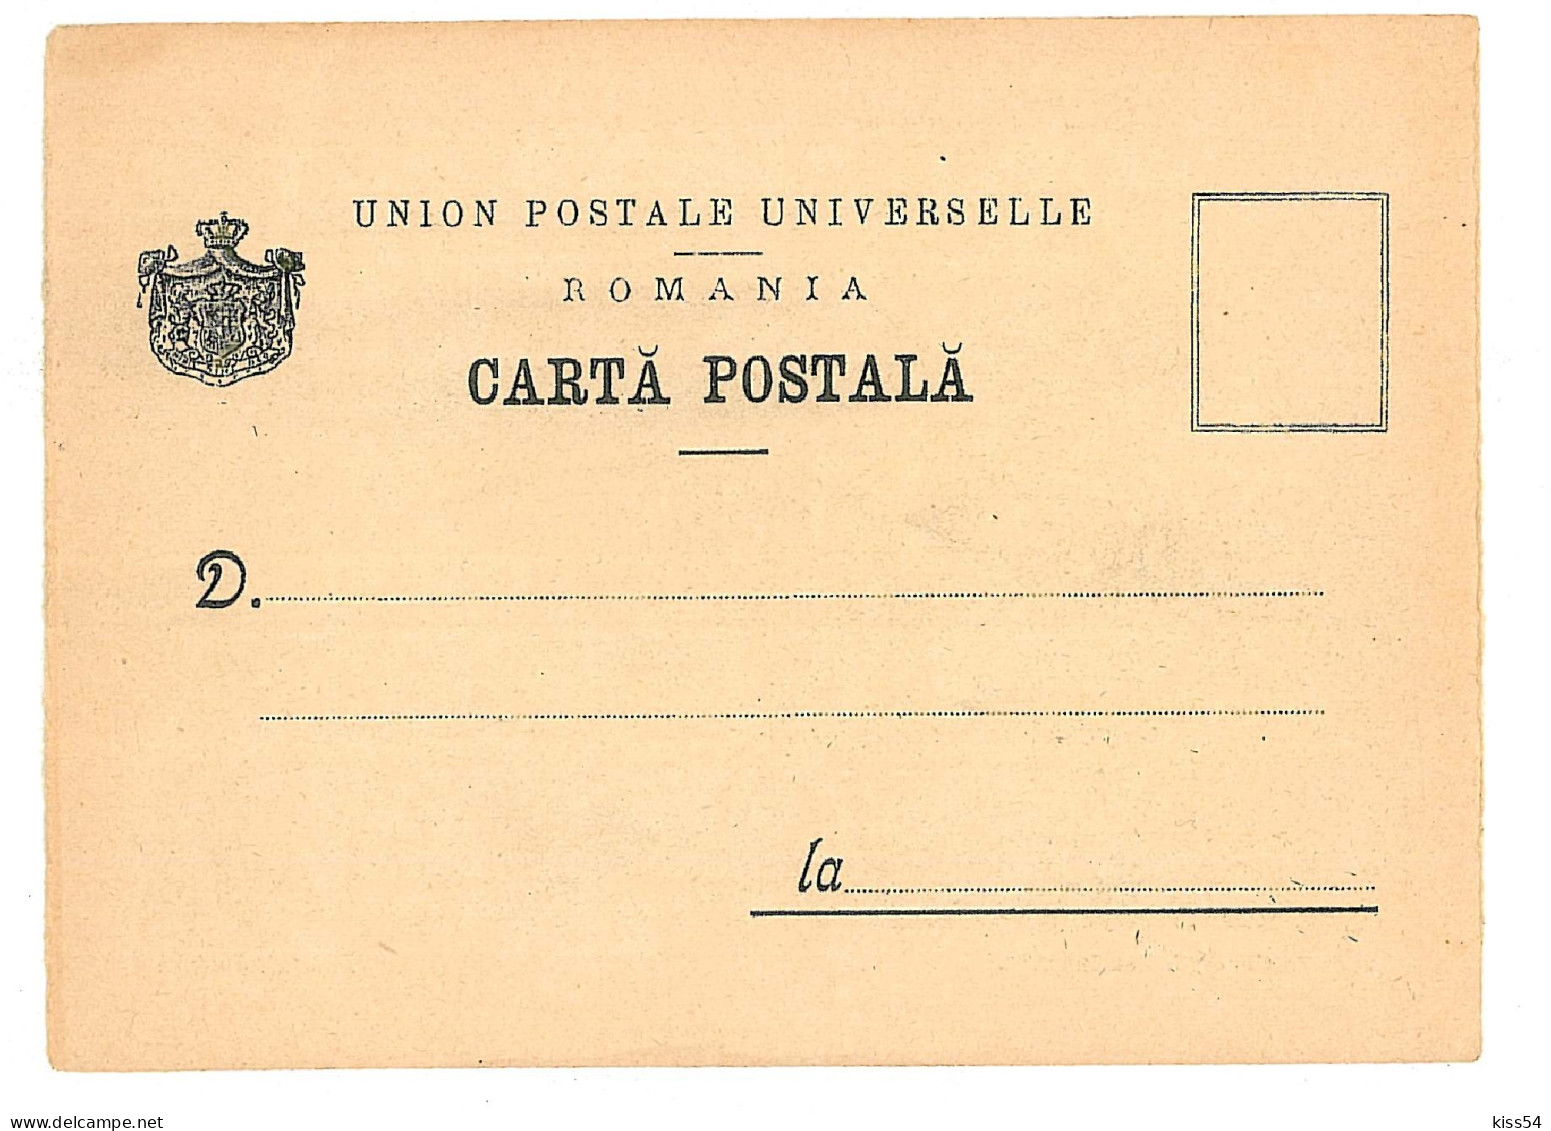 RO 43 - 9060 BUCURESTI, Expozitia Gen. Pavilionul Austriei, Romania - Old Postcard - Unused - 1906 - Rumänien